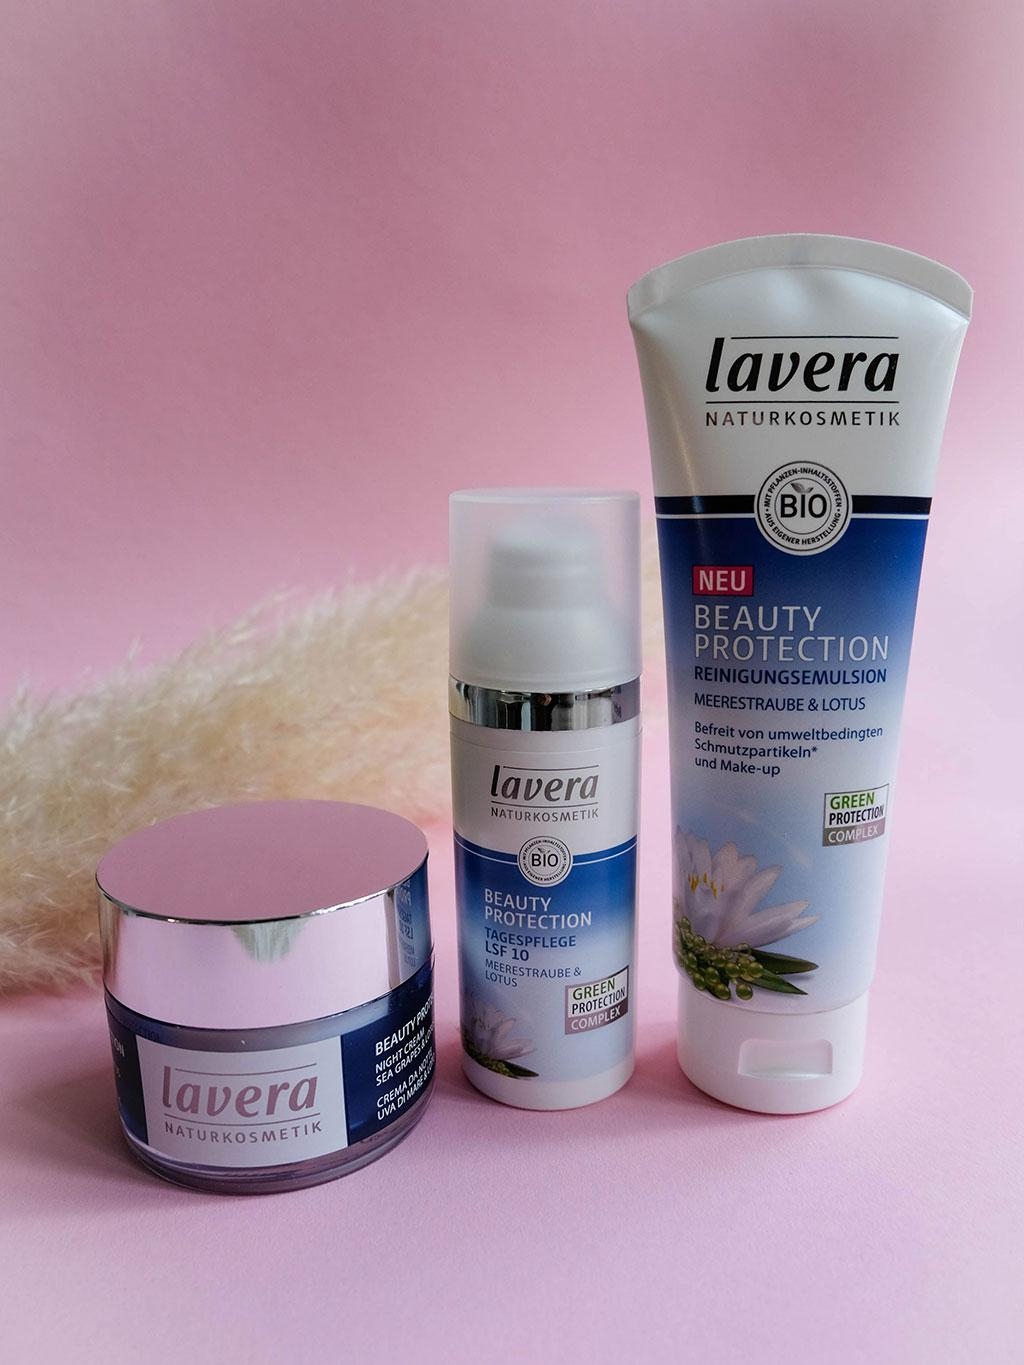 Neue Pflegeserie von Lavera: Mit Meerestraube & Lotus schützen wir uns vor Umwelteinflüssen #beautylieblinge #lavera